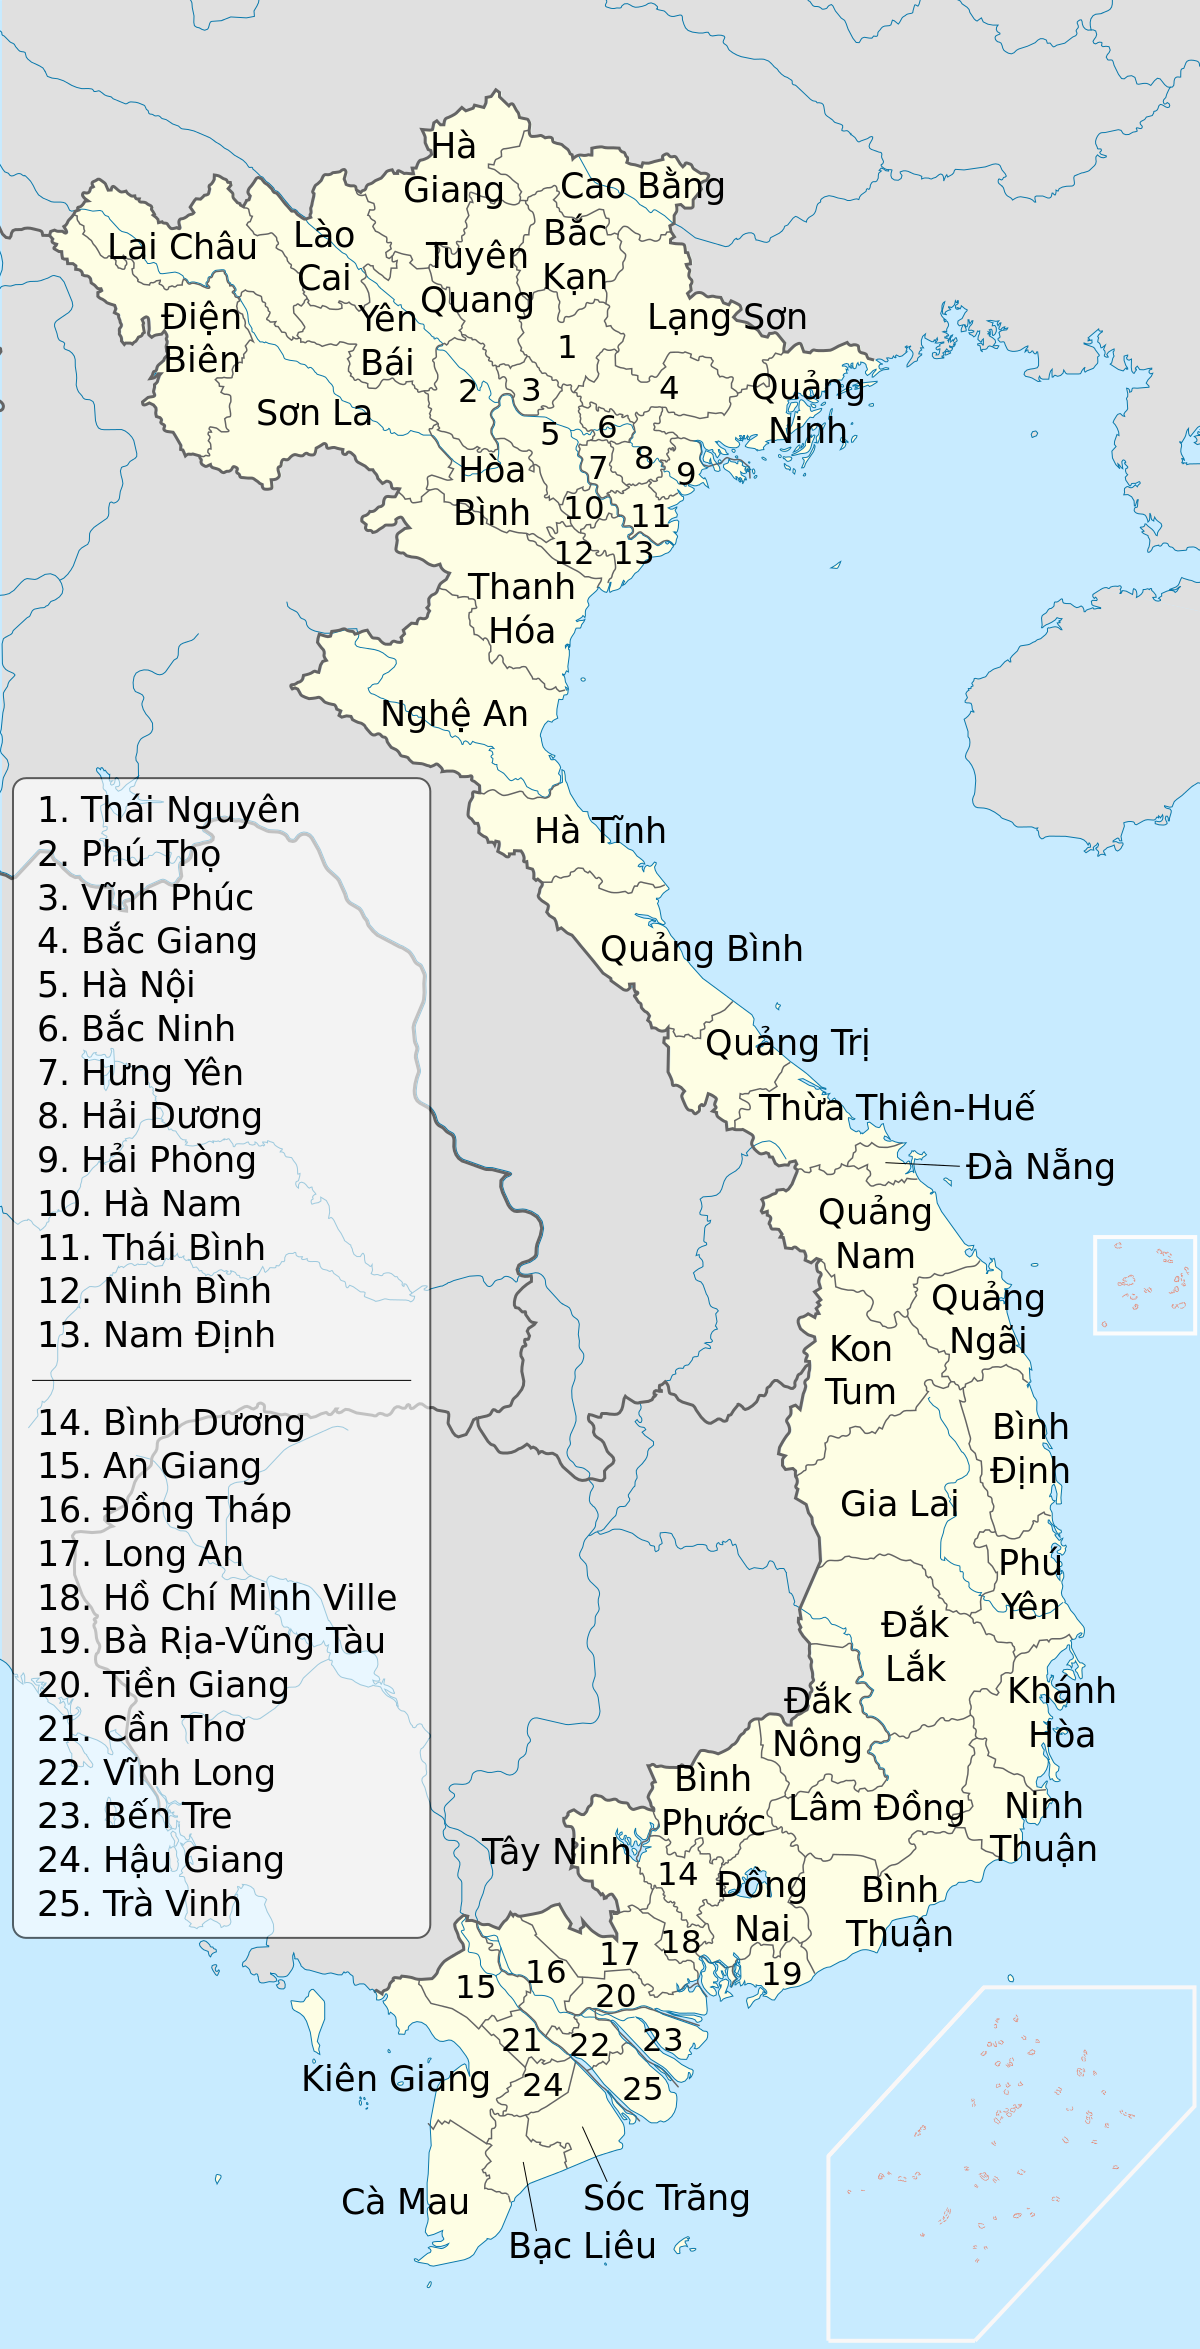 Viet Nam Provinces 